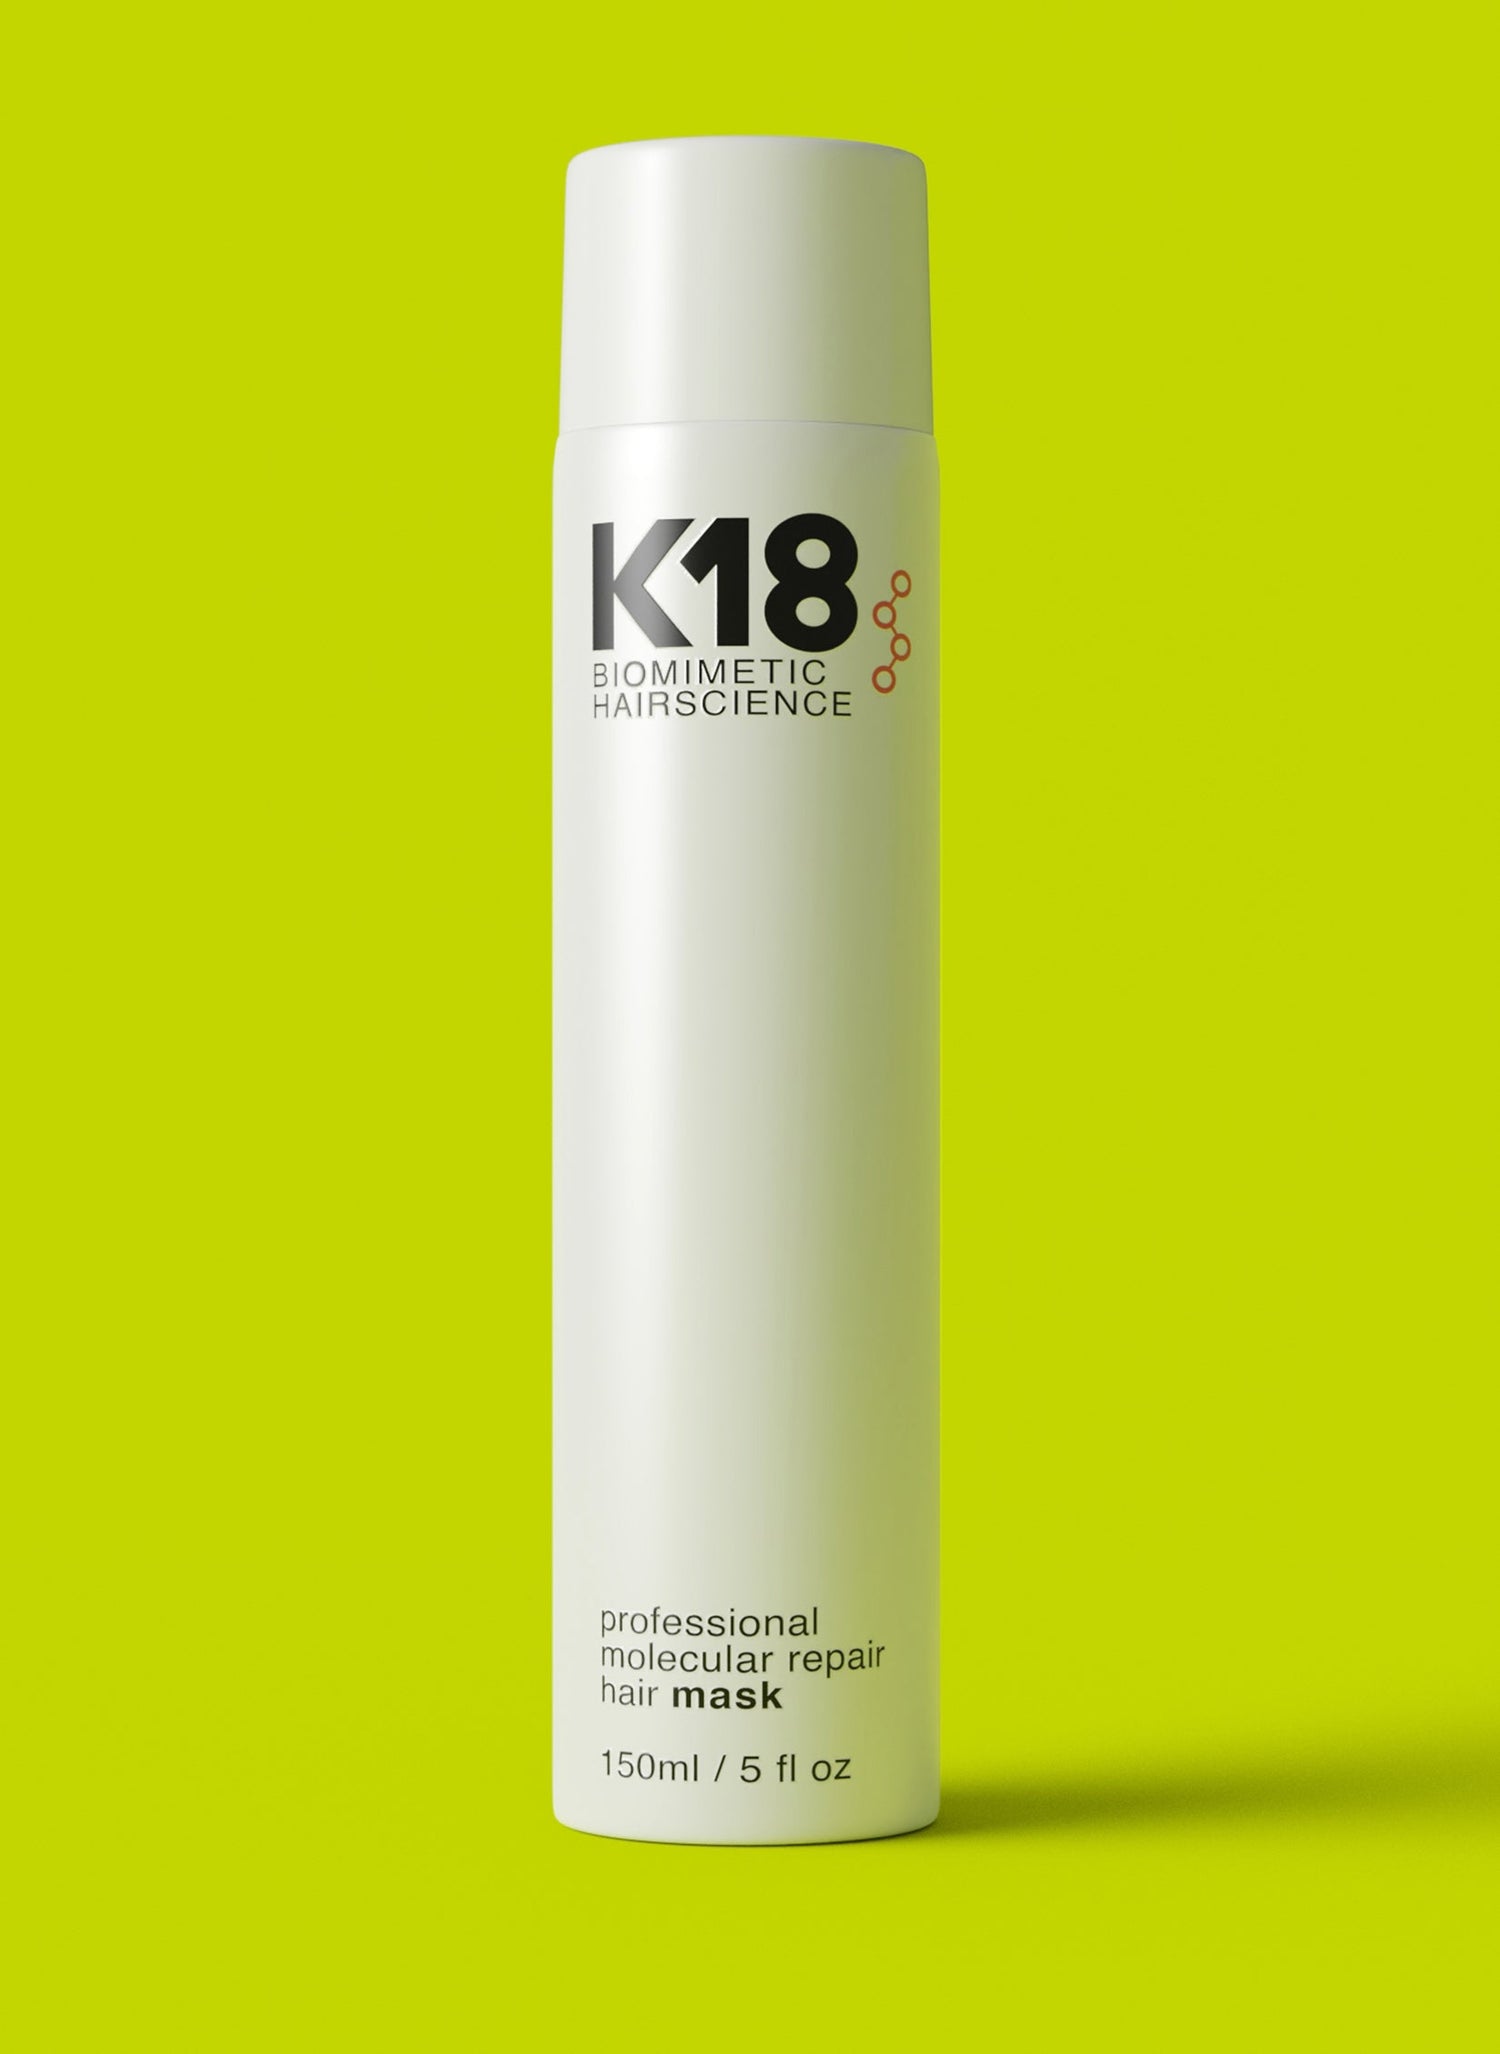 K18 professional molecular repair mask